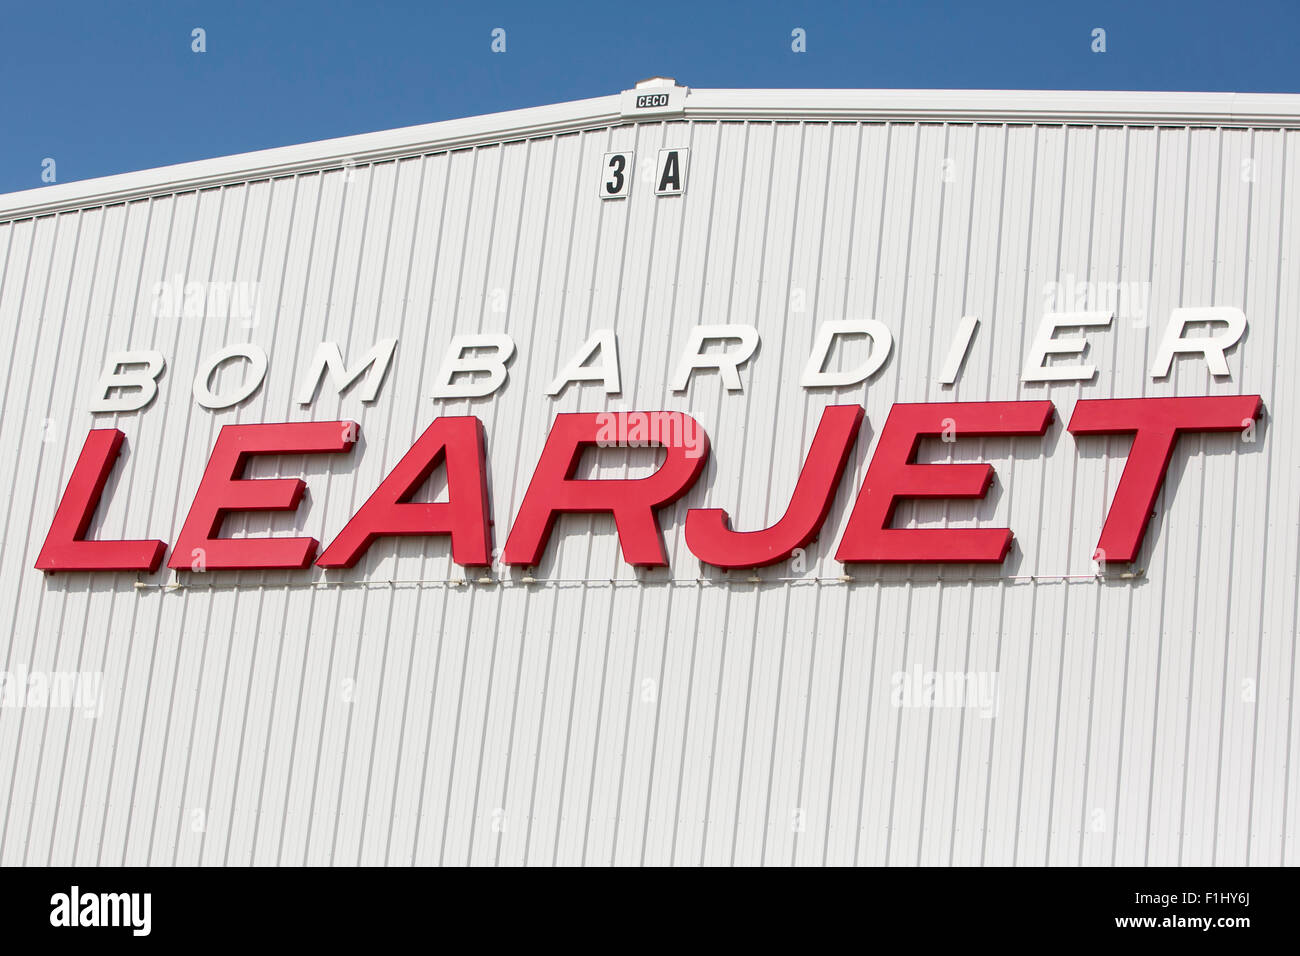 Un logo segno al di fuori della sede della Bombardier Learjet Corporation di Wichita, Kansas, il 22 agosto 2015. Foto Stock